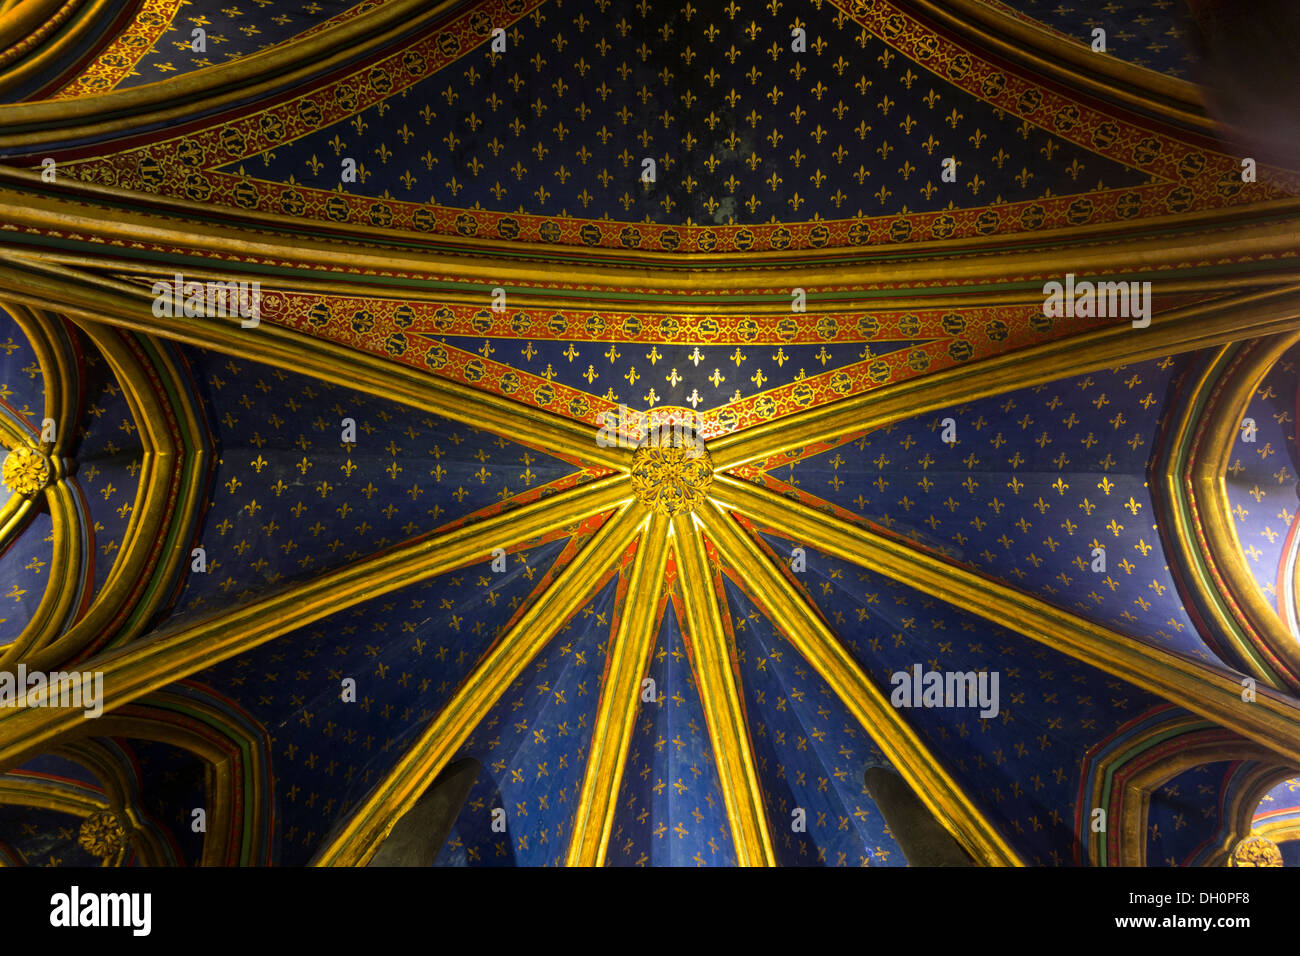 detail of vaulting, La Sainte-Chapelle: The Holy Chapel, Paris, France Stock Photo